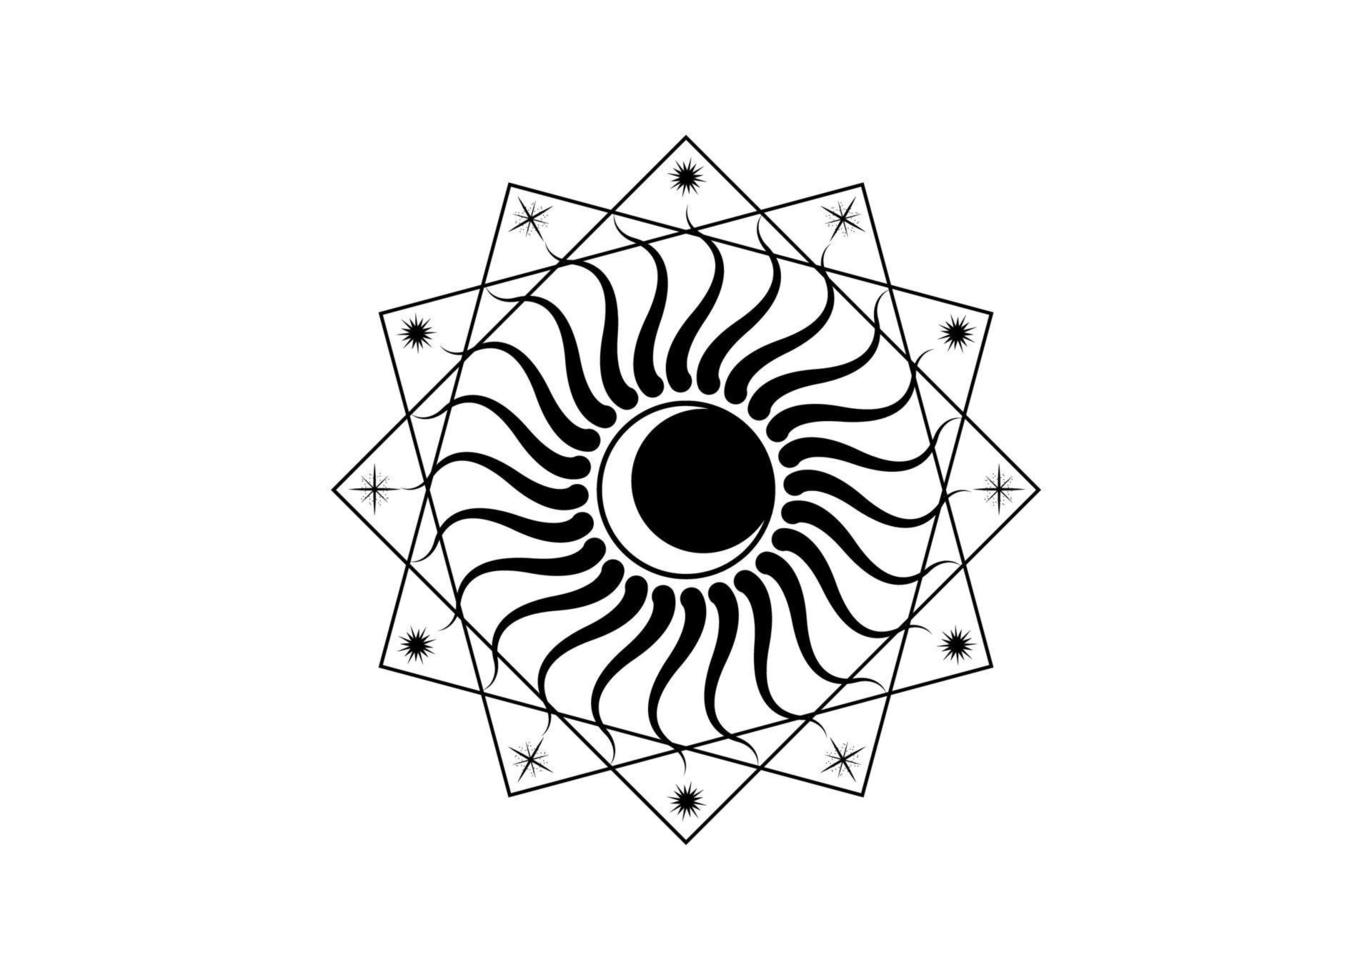 Mond- und Sonnenlogoschablone, heiliges Geometrie-Wicca-Symbol, radiales Strahlensymbol, Konzept des Gottes- und Göttintätowierungsstils, freimaurerische Symbologie, Vektor einzeln auf weißem Hintergrund